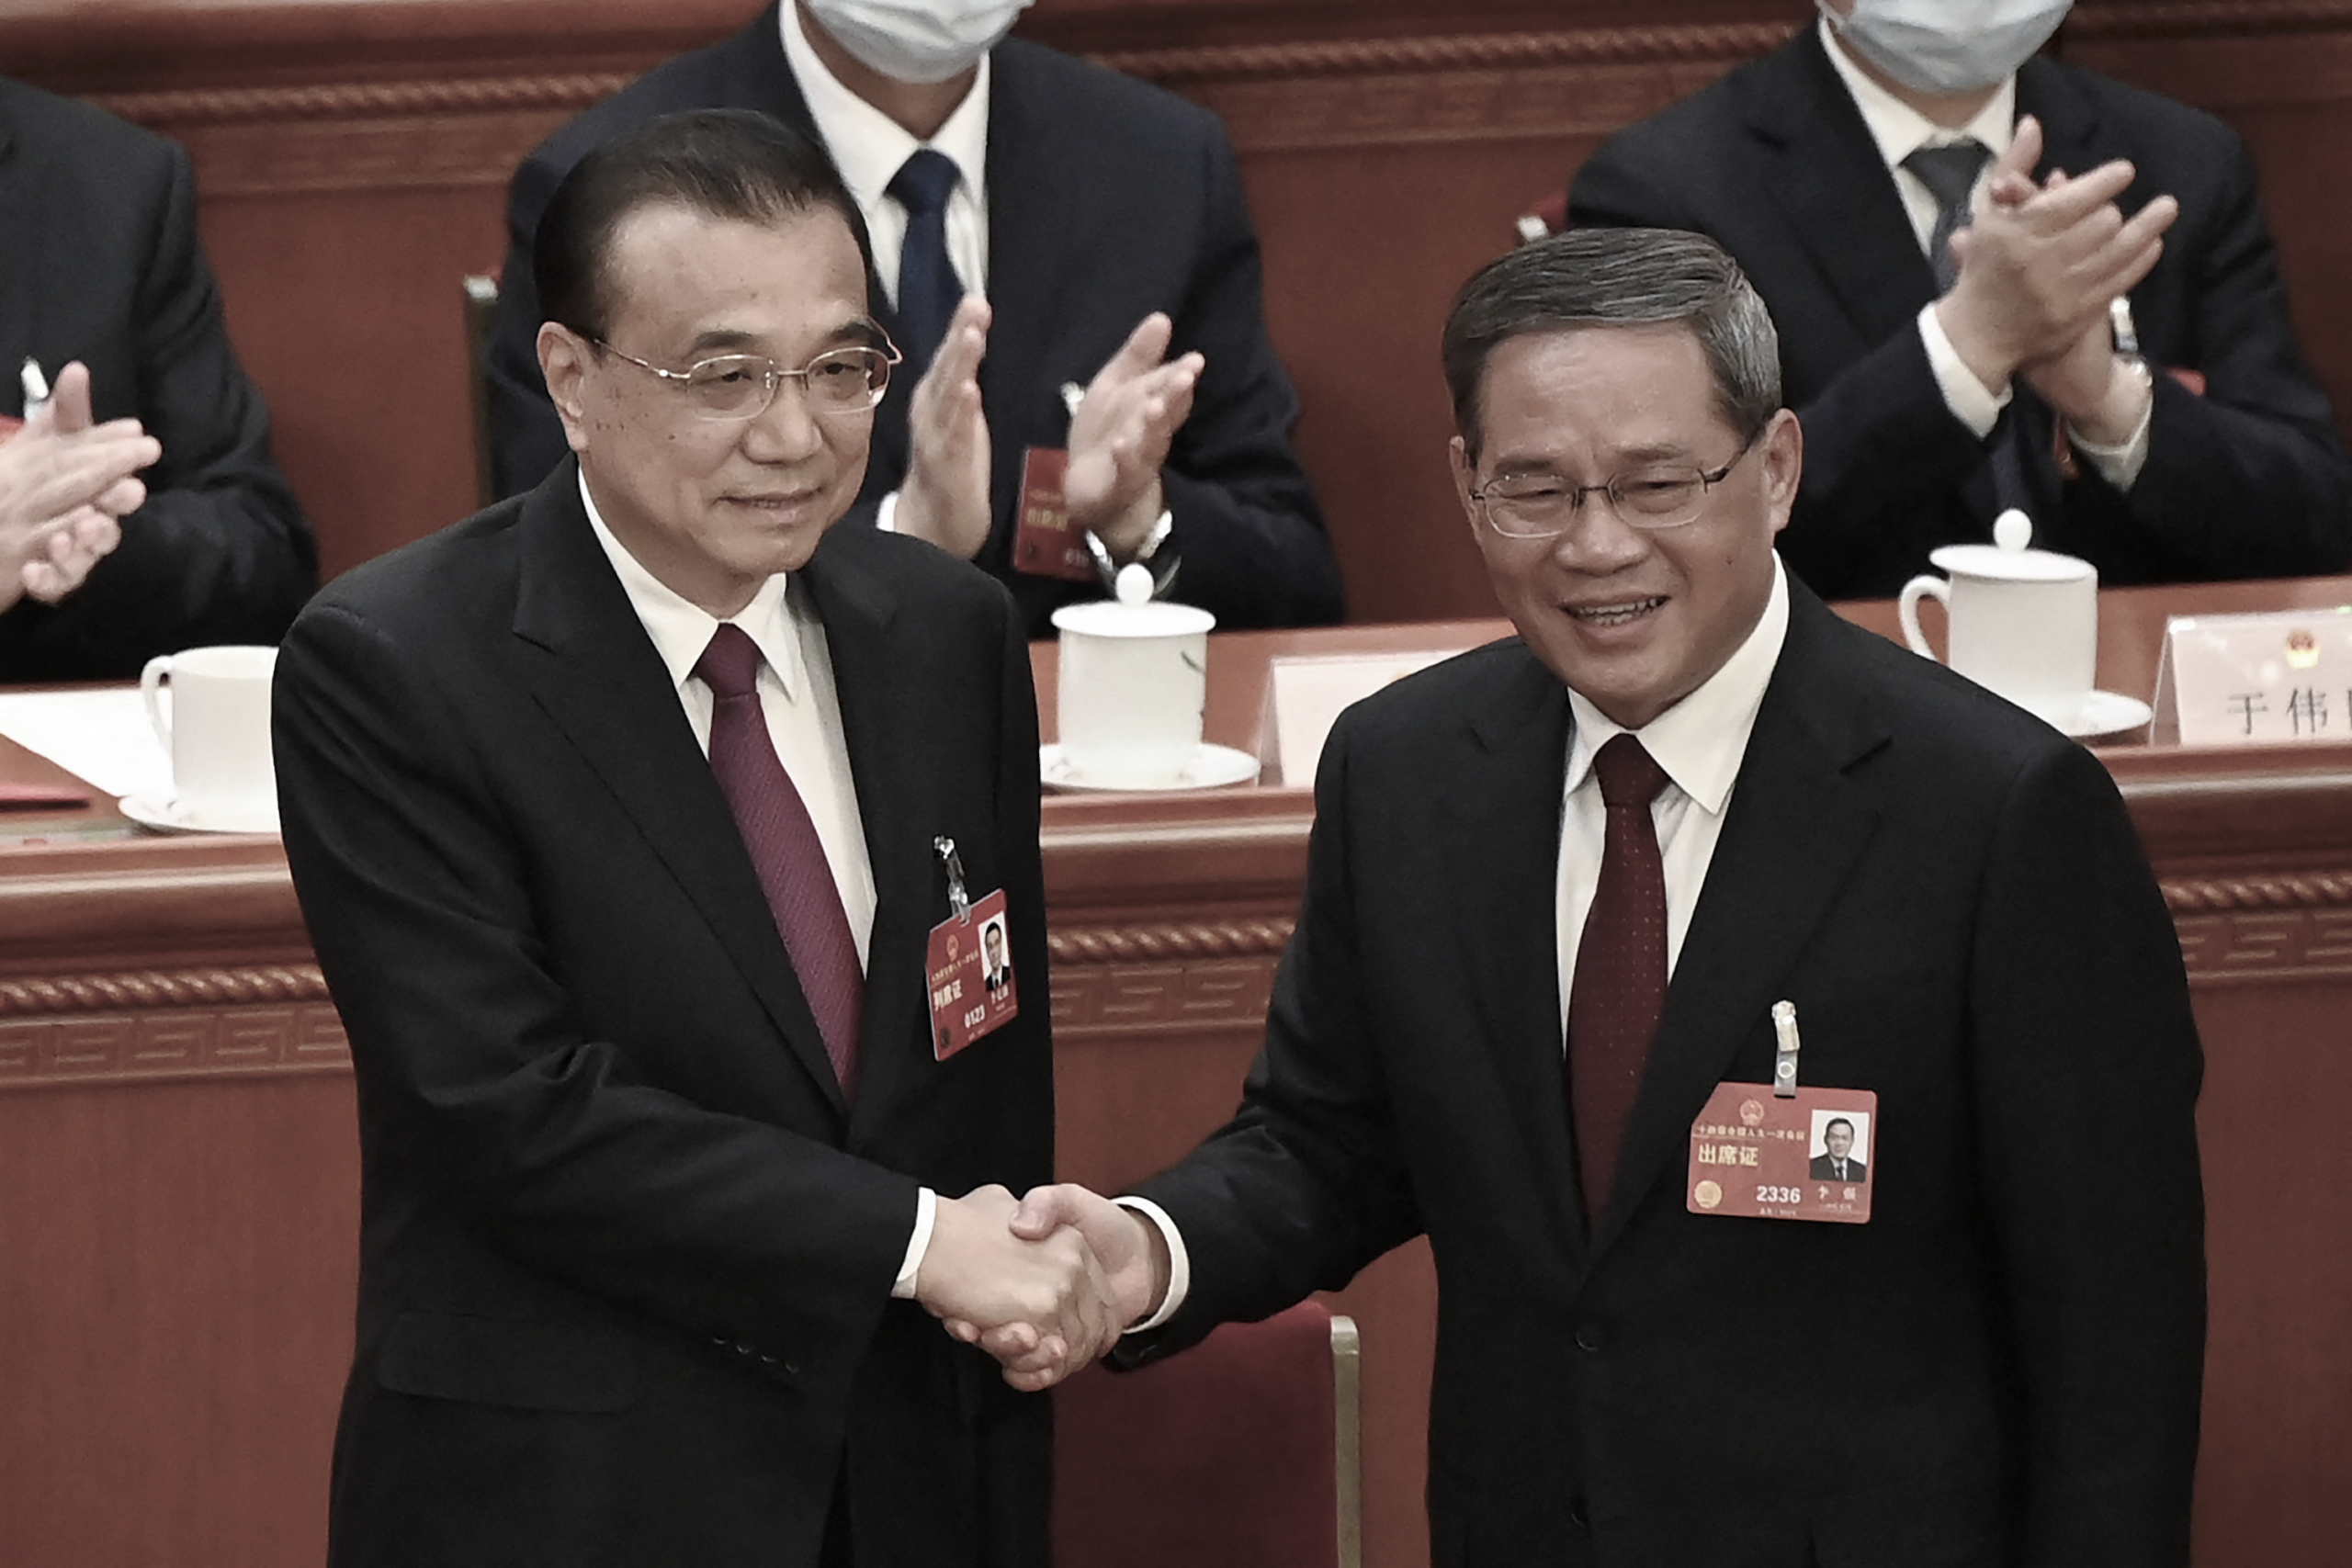 Ngày 11/03/2023, cựu Thủ tướng Lý Khắc Cường (trái) và Thủ tướng mới đắc cử Lý Cường (phải) đã bắt tay nhau tại Hội nghị toàn thể lần thứ 4 của Đại hội đại biểu Nhân dân toàn quốc (NPC) tại Đại lễ đường Nhân dân ở Bắc Kinh. (Ảnh: GREG BAKER/POOL/AFP/Getty Images)